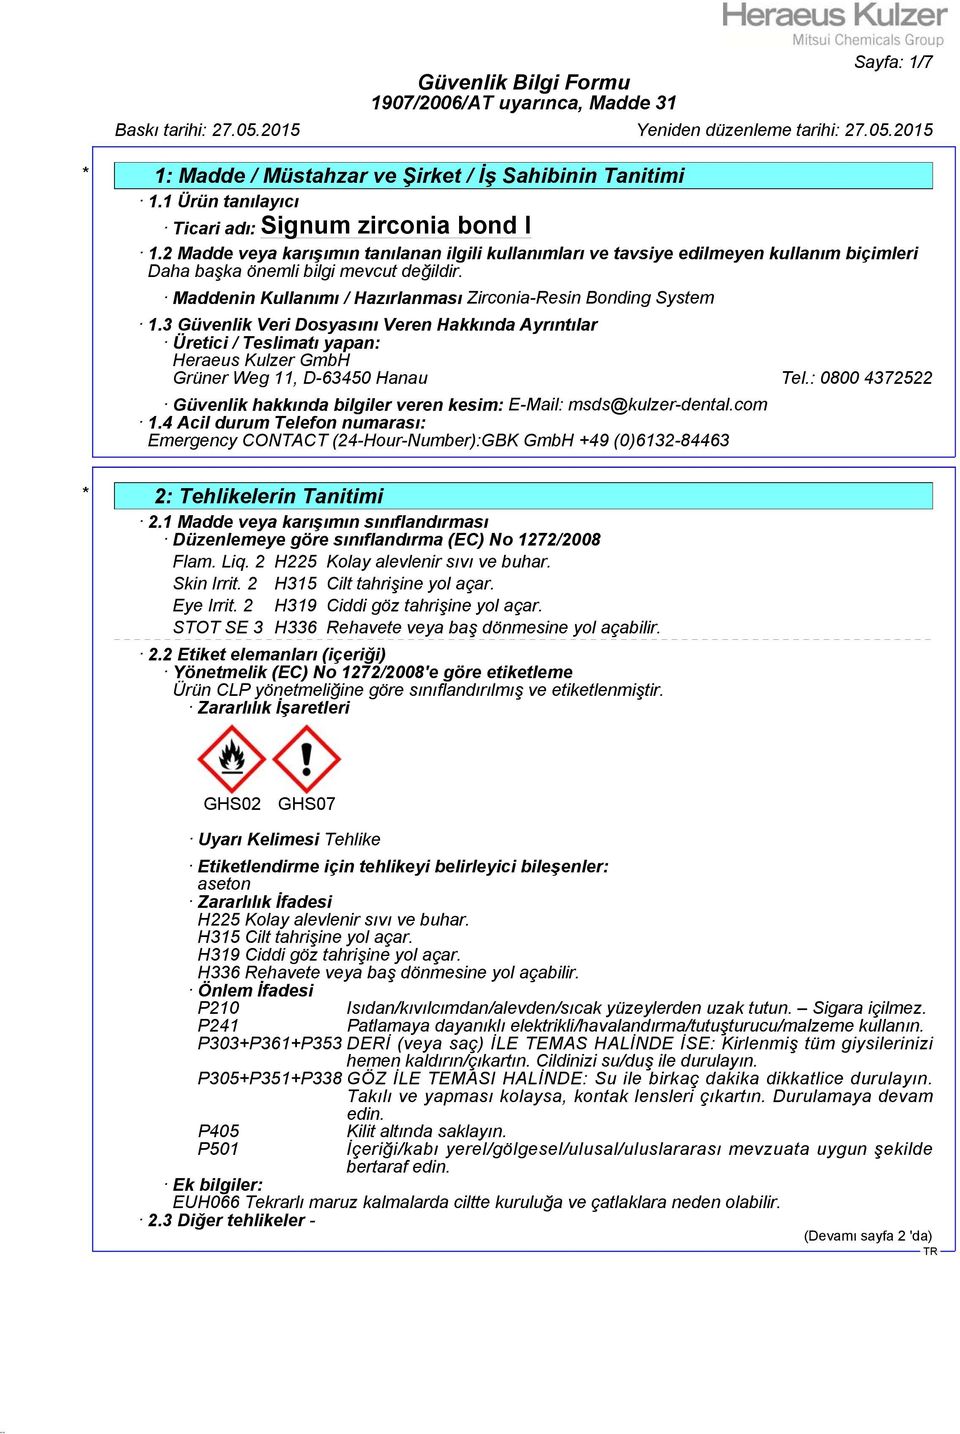 3 Güvenlik Veri Dosyasını Veren Hakkında Ayrıntılar Üretici / Teslimatı yapan: Heraeus Kulzer GmbH Grüner Weg 11, D-63450 Hanau Tel.